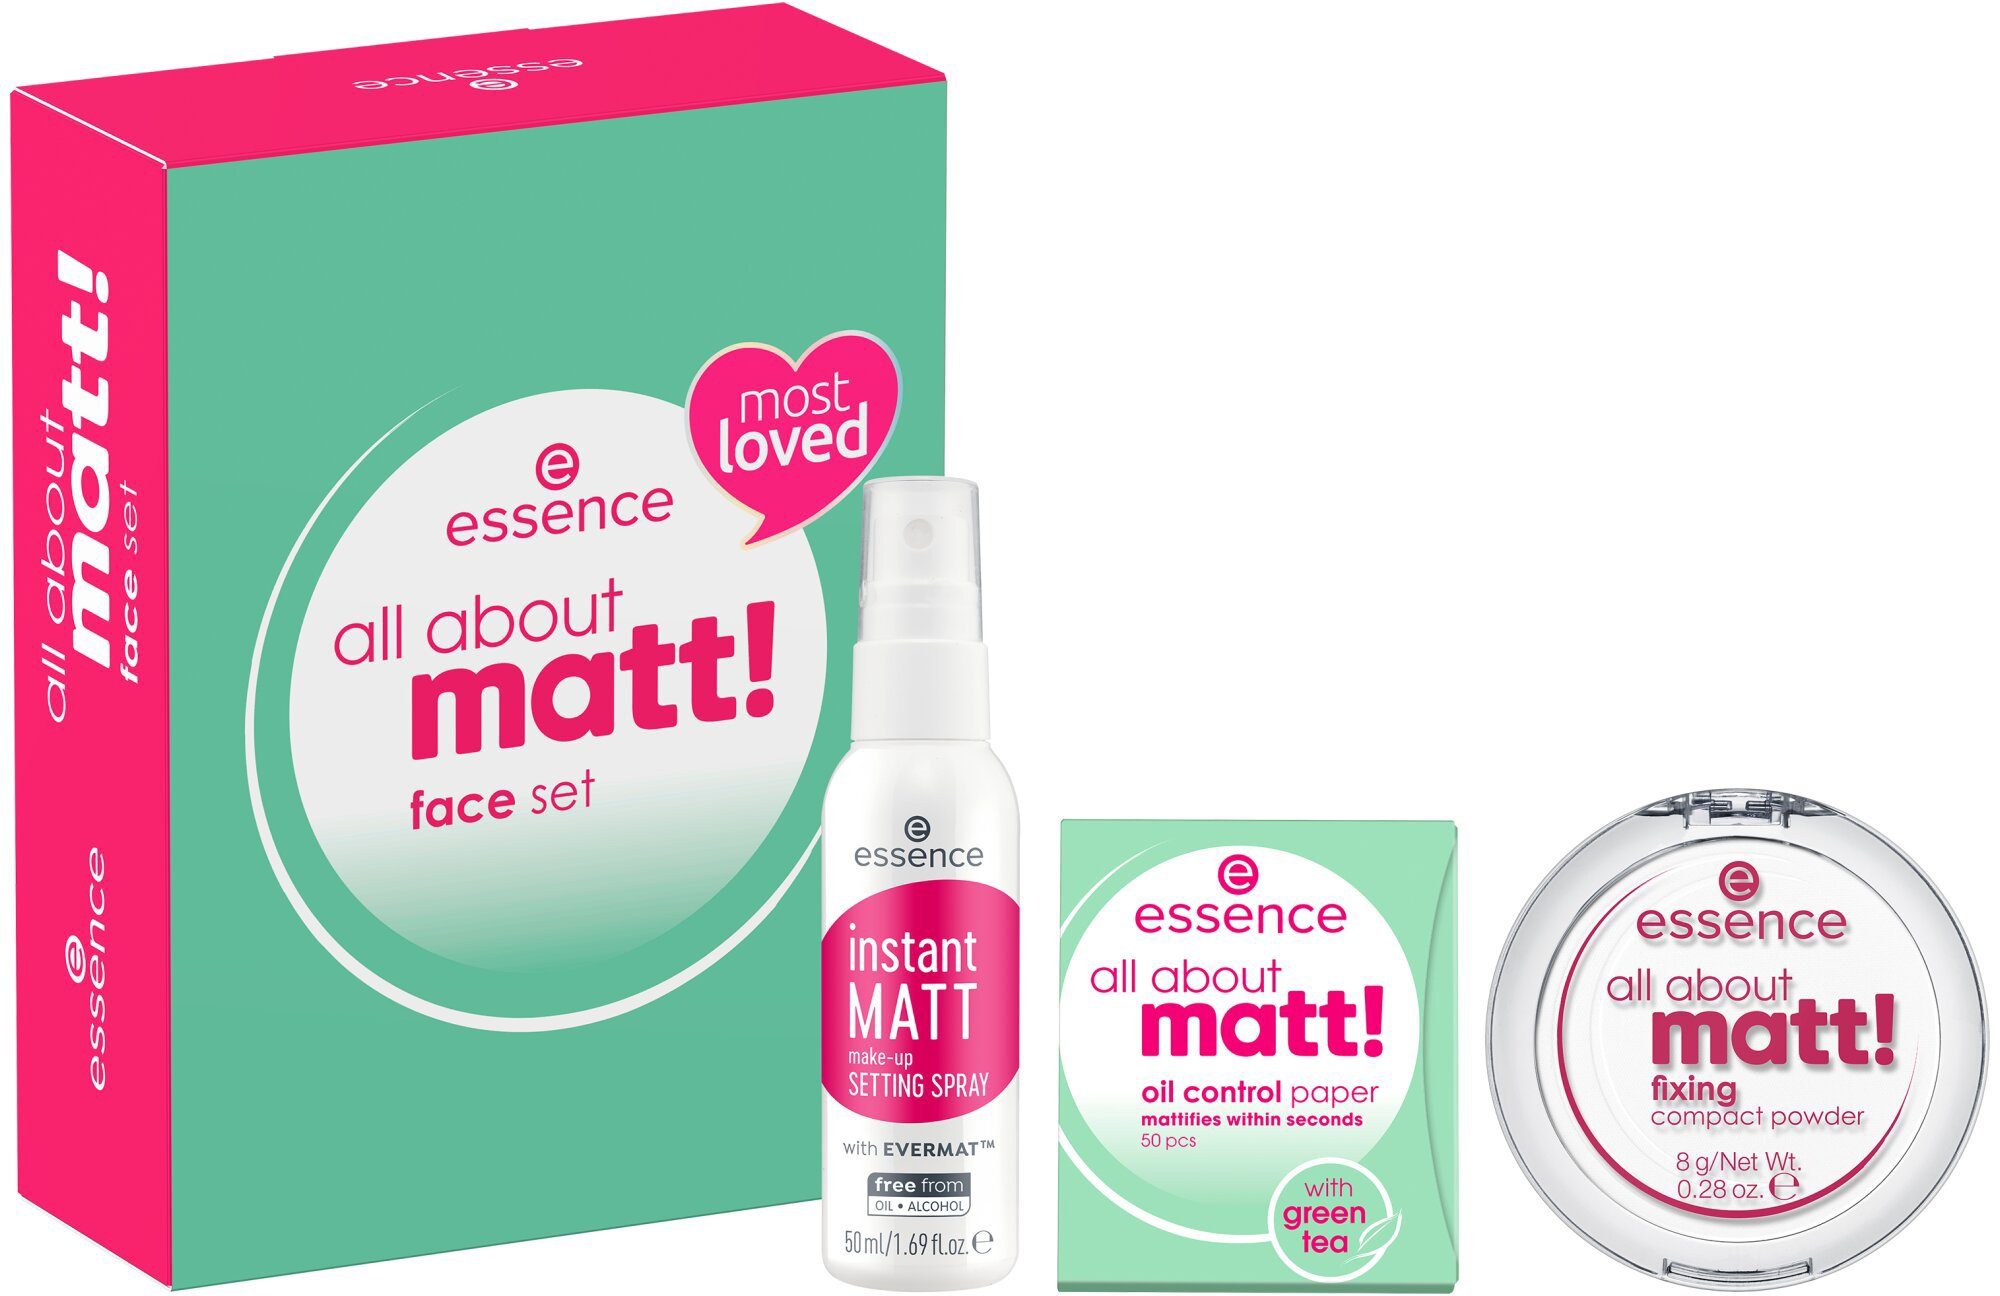 Essence Make-up Set all matt! set, 3-tlg. face about